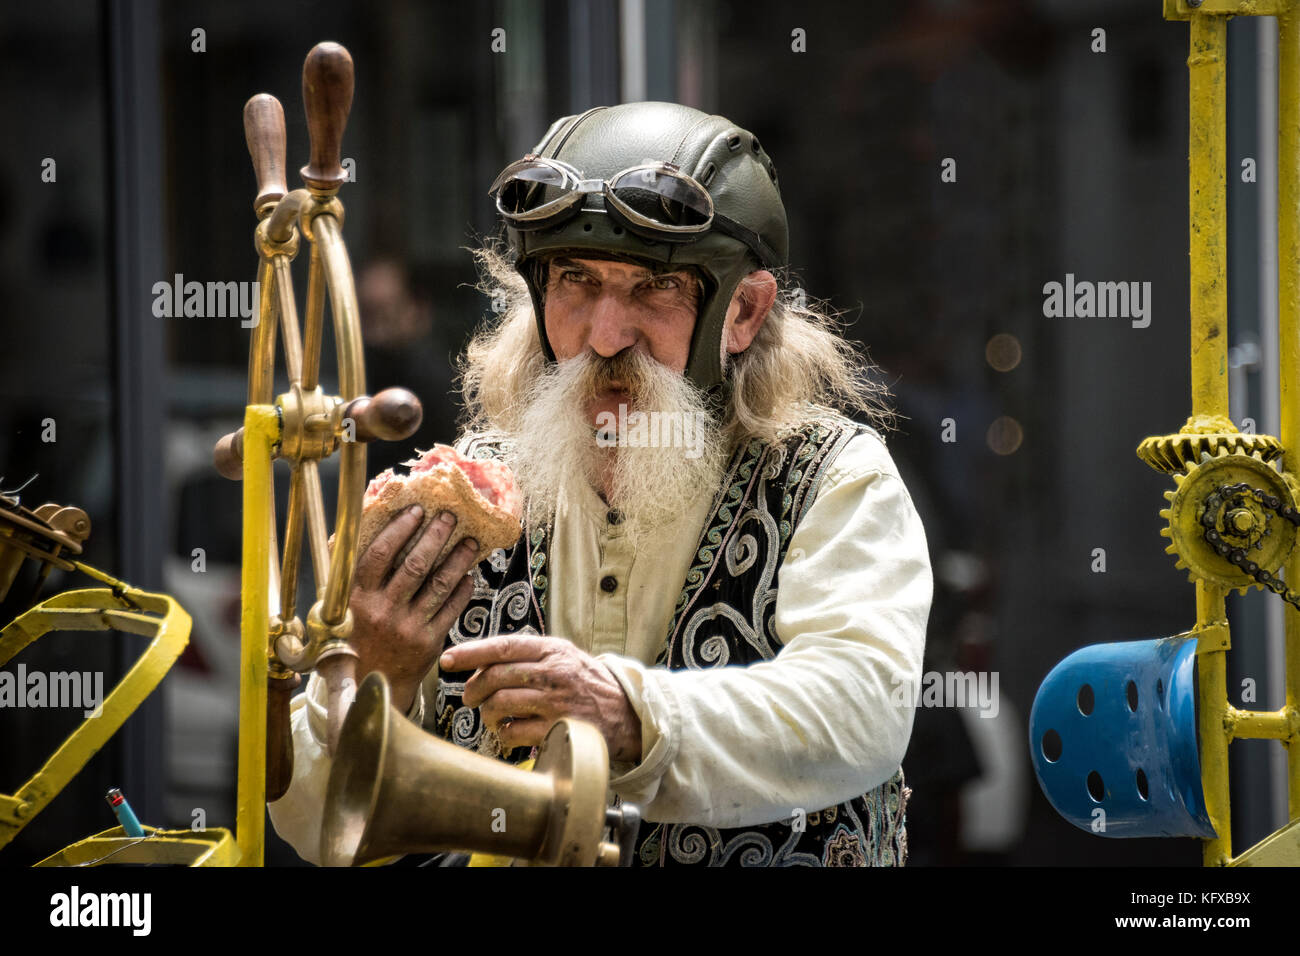 Homme parisien sur son temps steampunk billet Location de manger un sandwich, Paris Banque D'Images